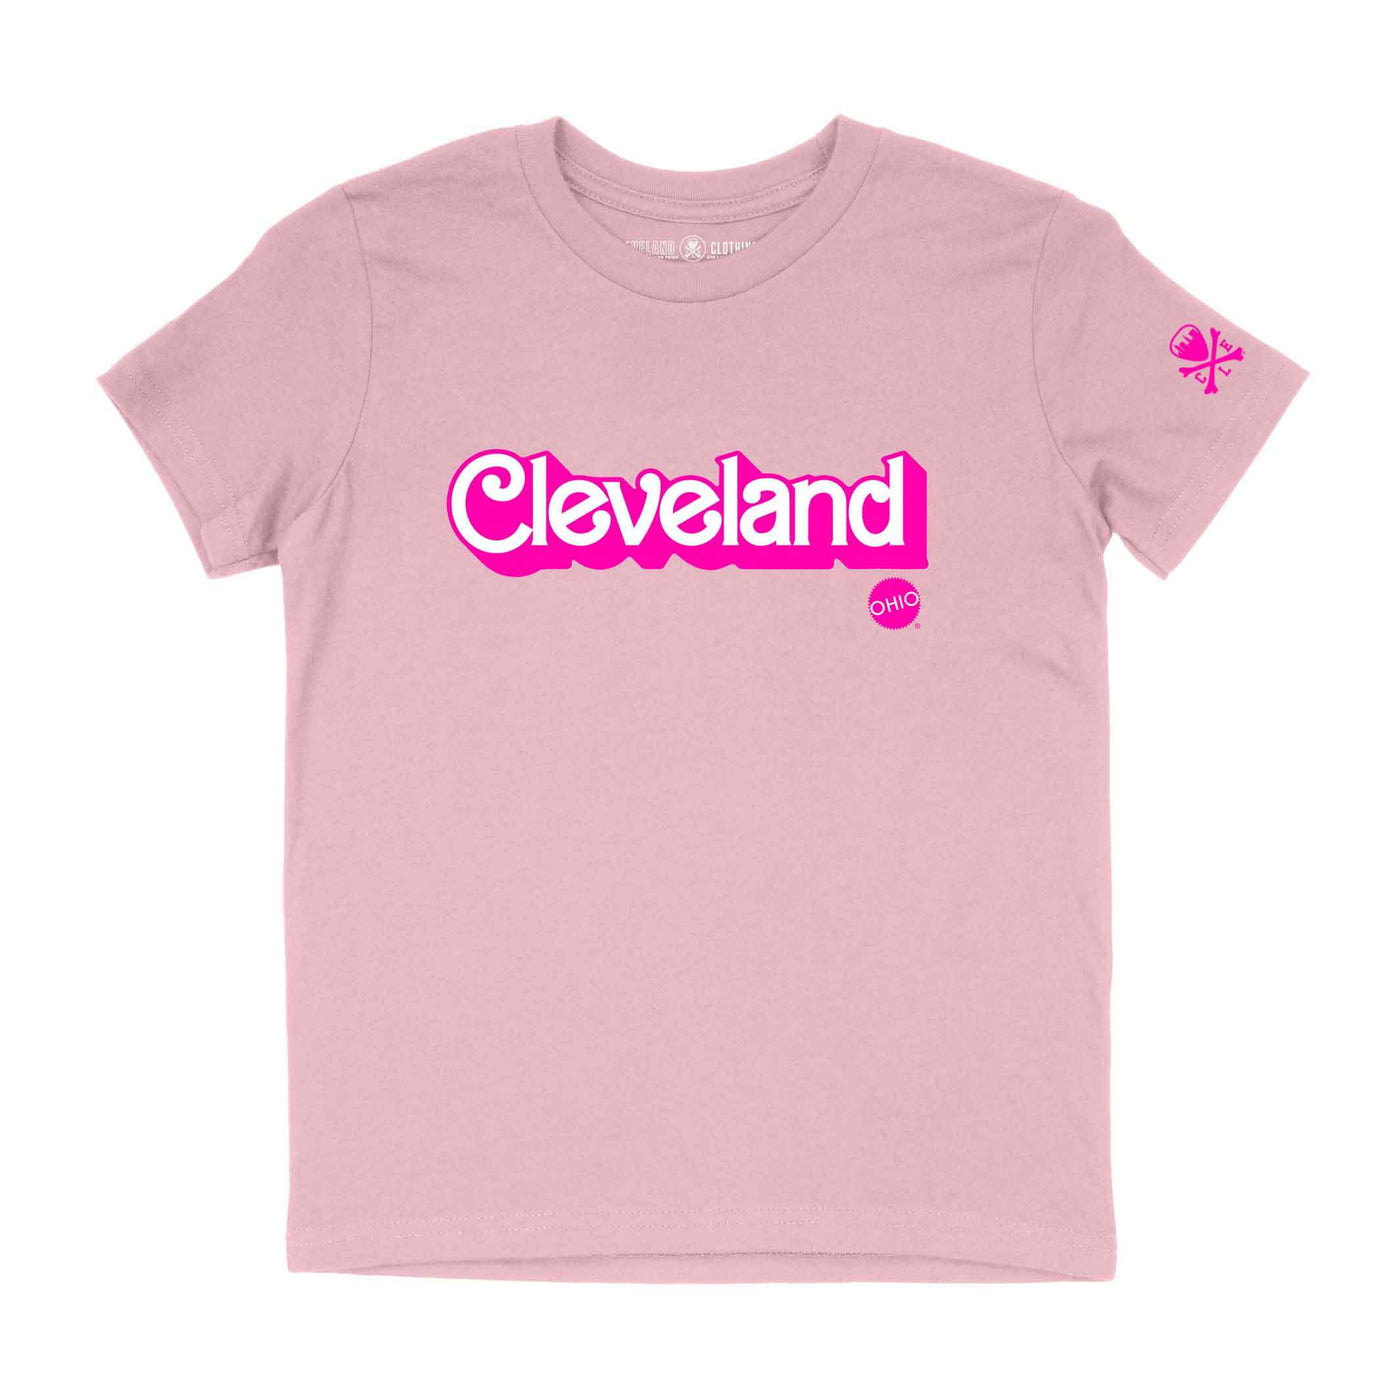 Malibu Cleveland - Youth Crew T-Shirt